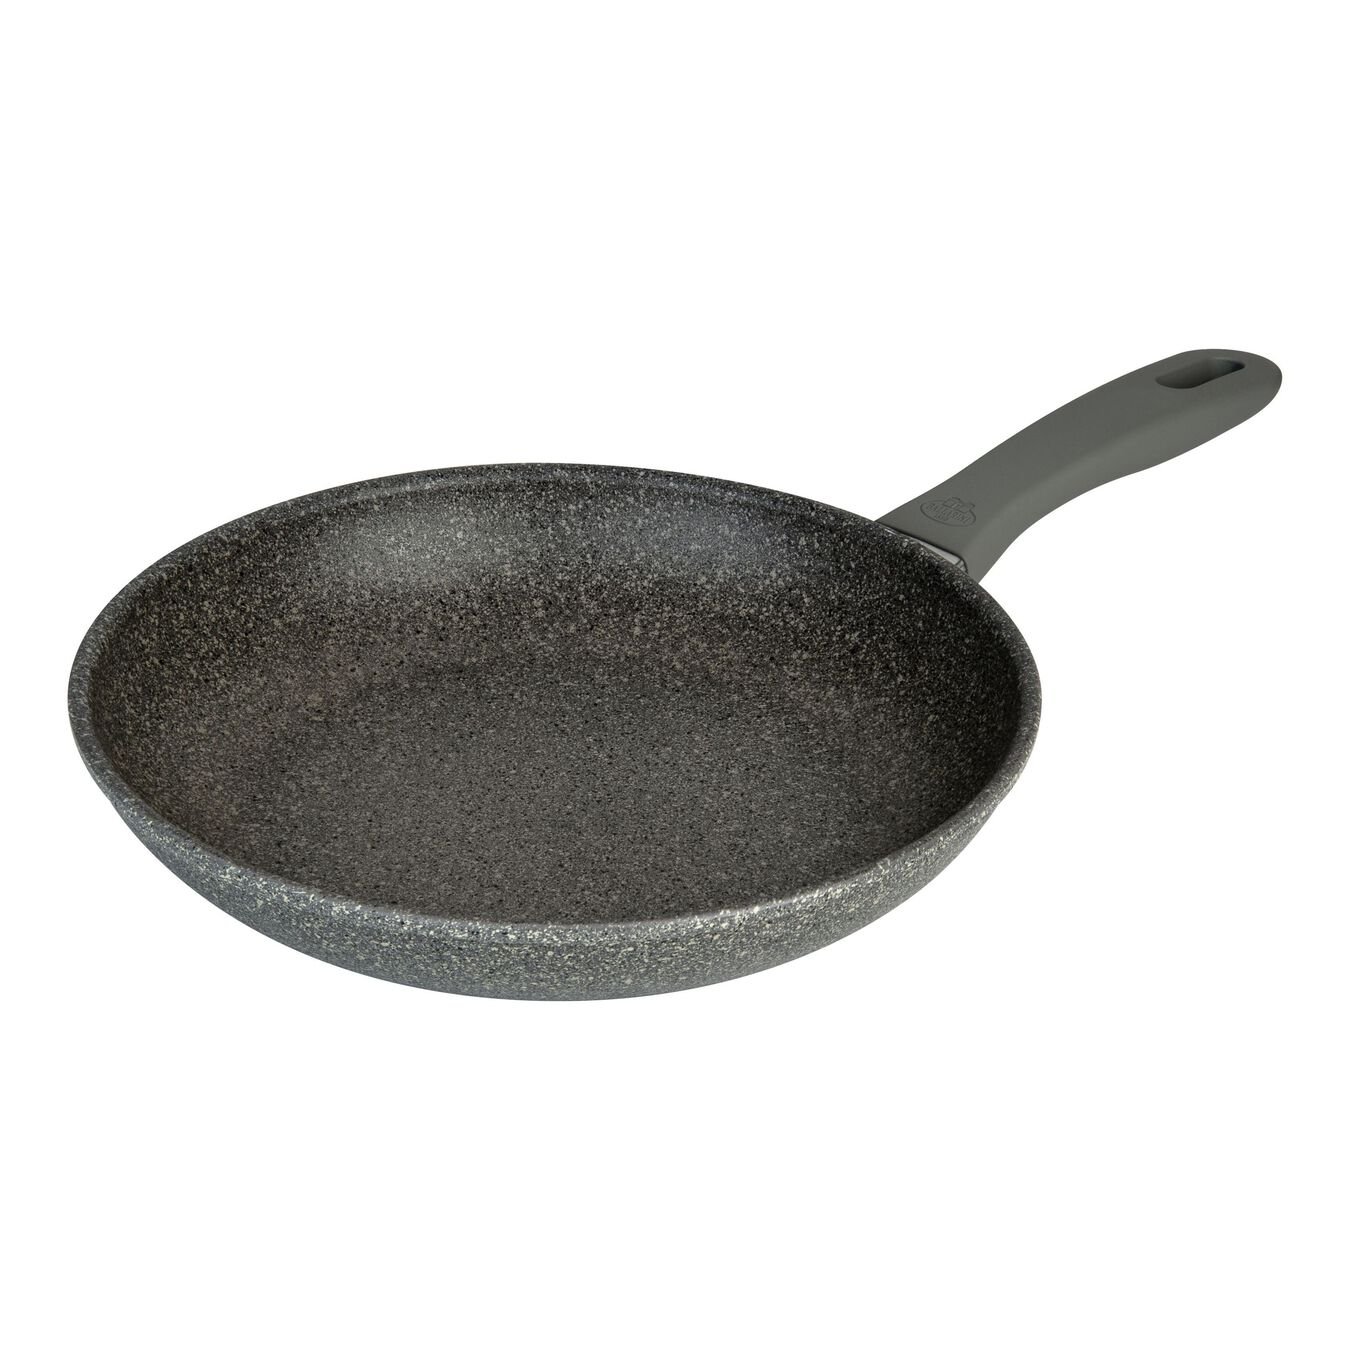 24 cm / 9.5 inch aluminium Frying pan,,large 1